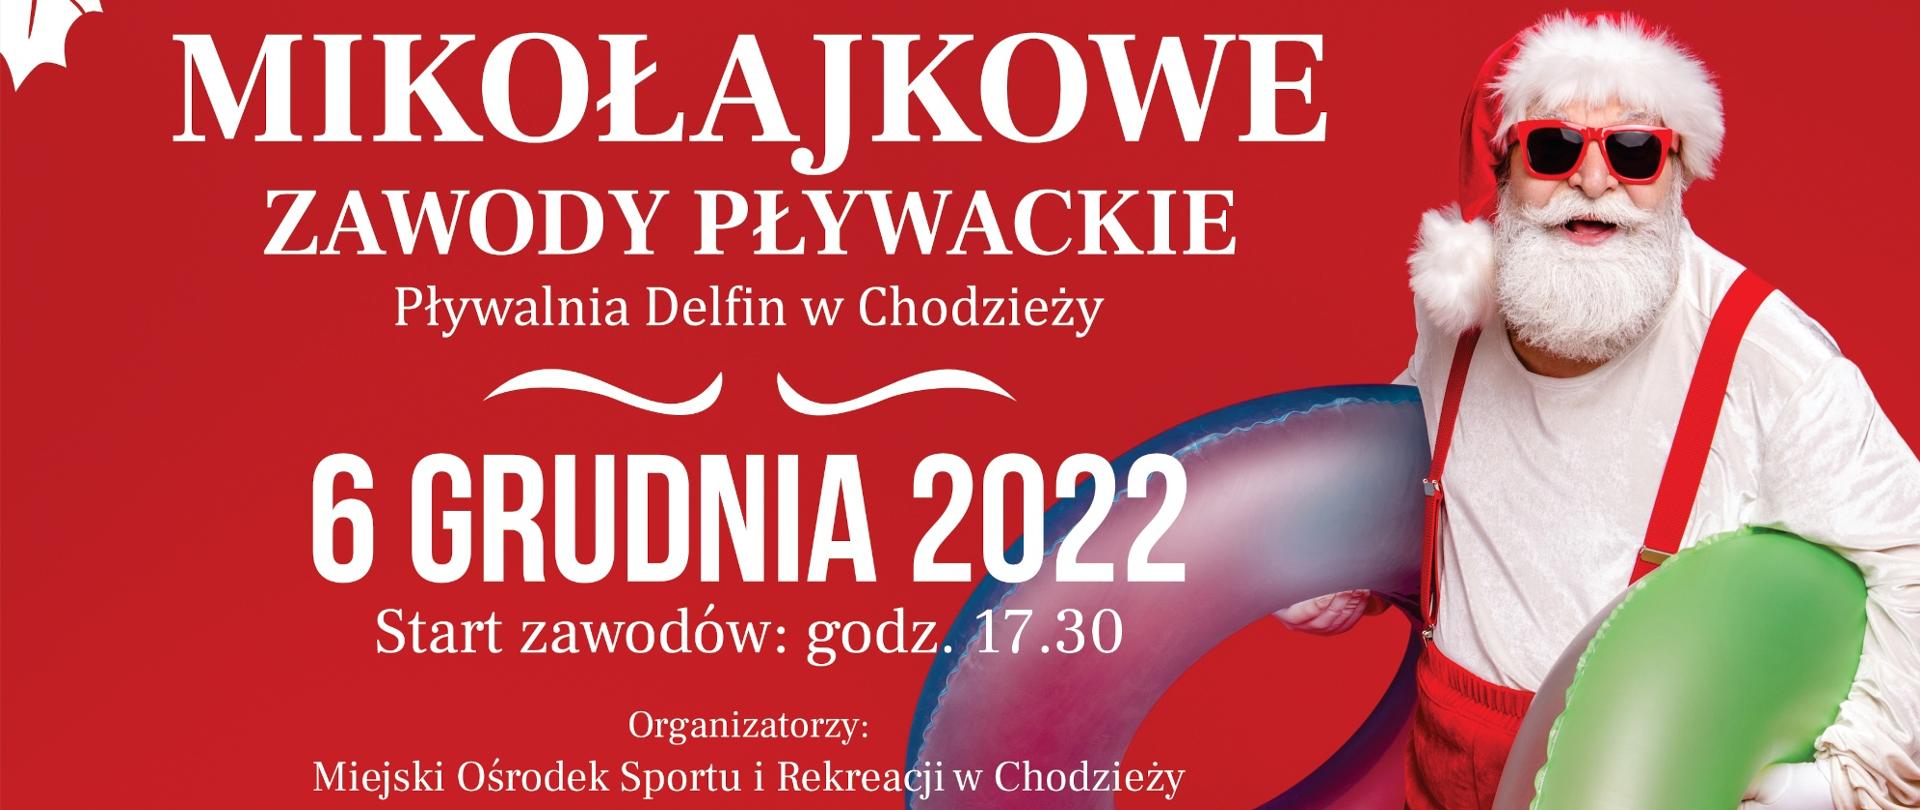 Plakat - Zawody Mikołajkowe 